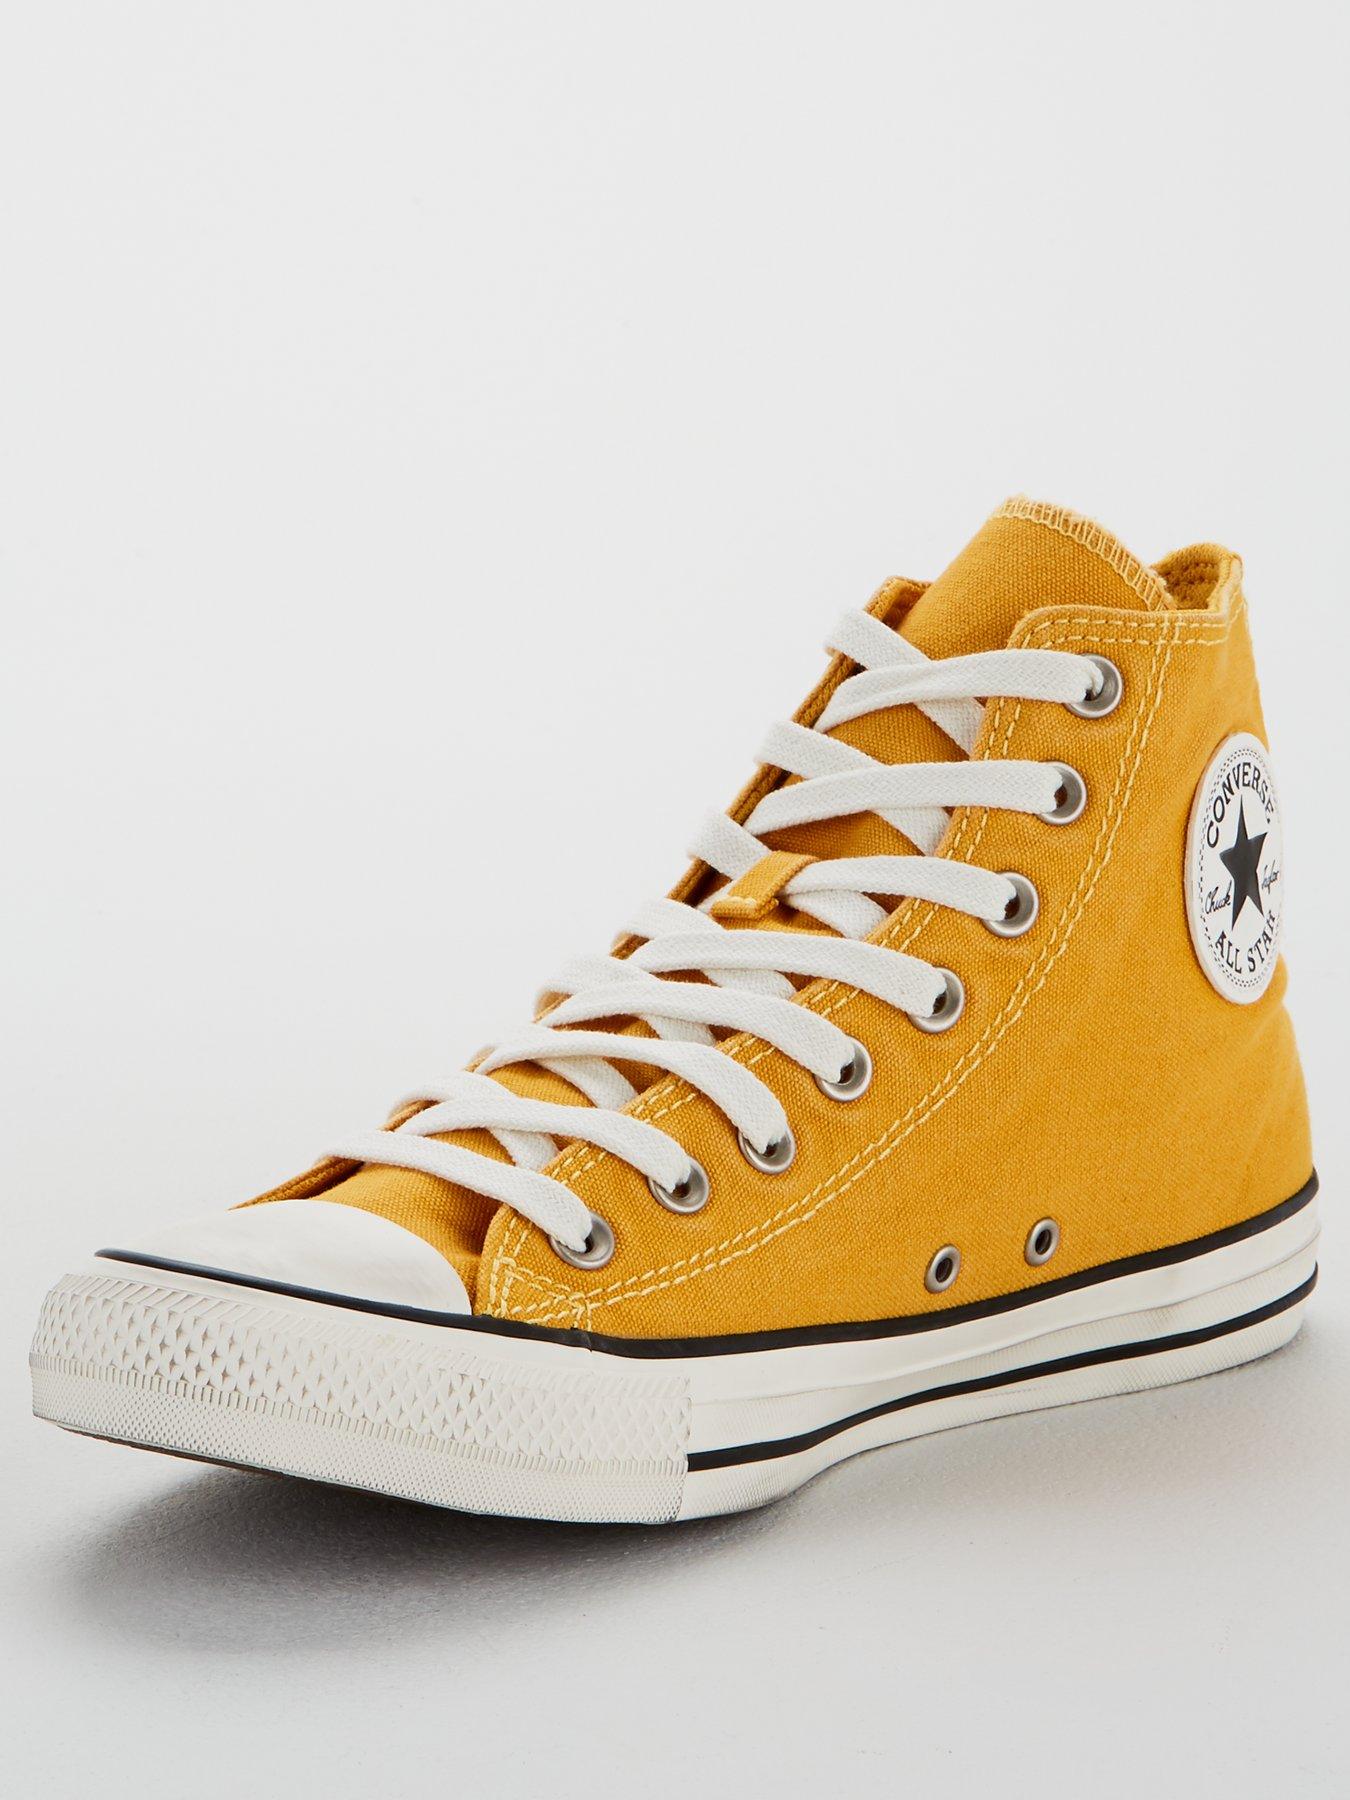 yellow converse uk 6